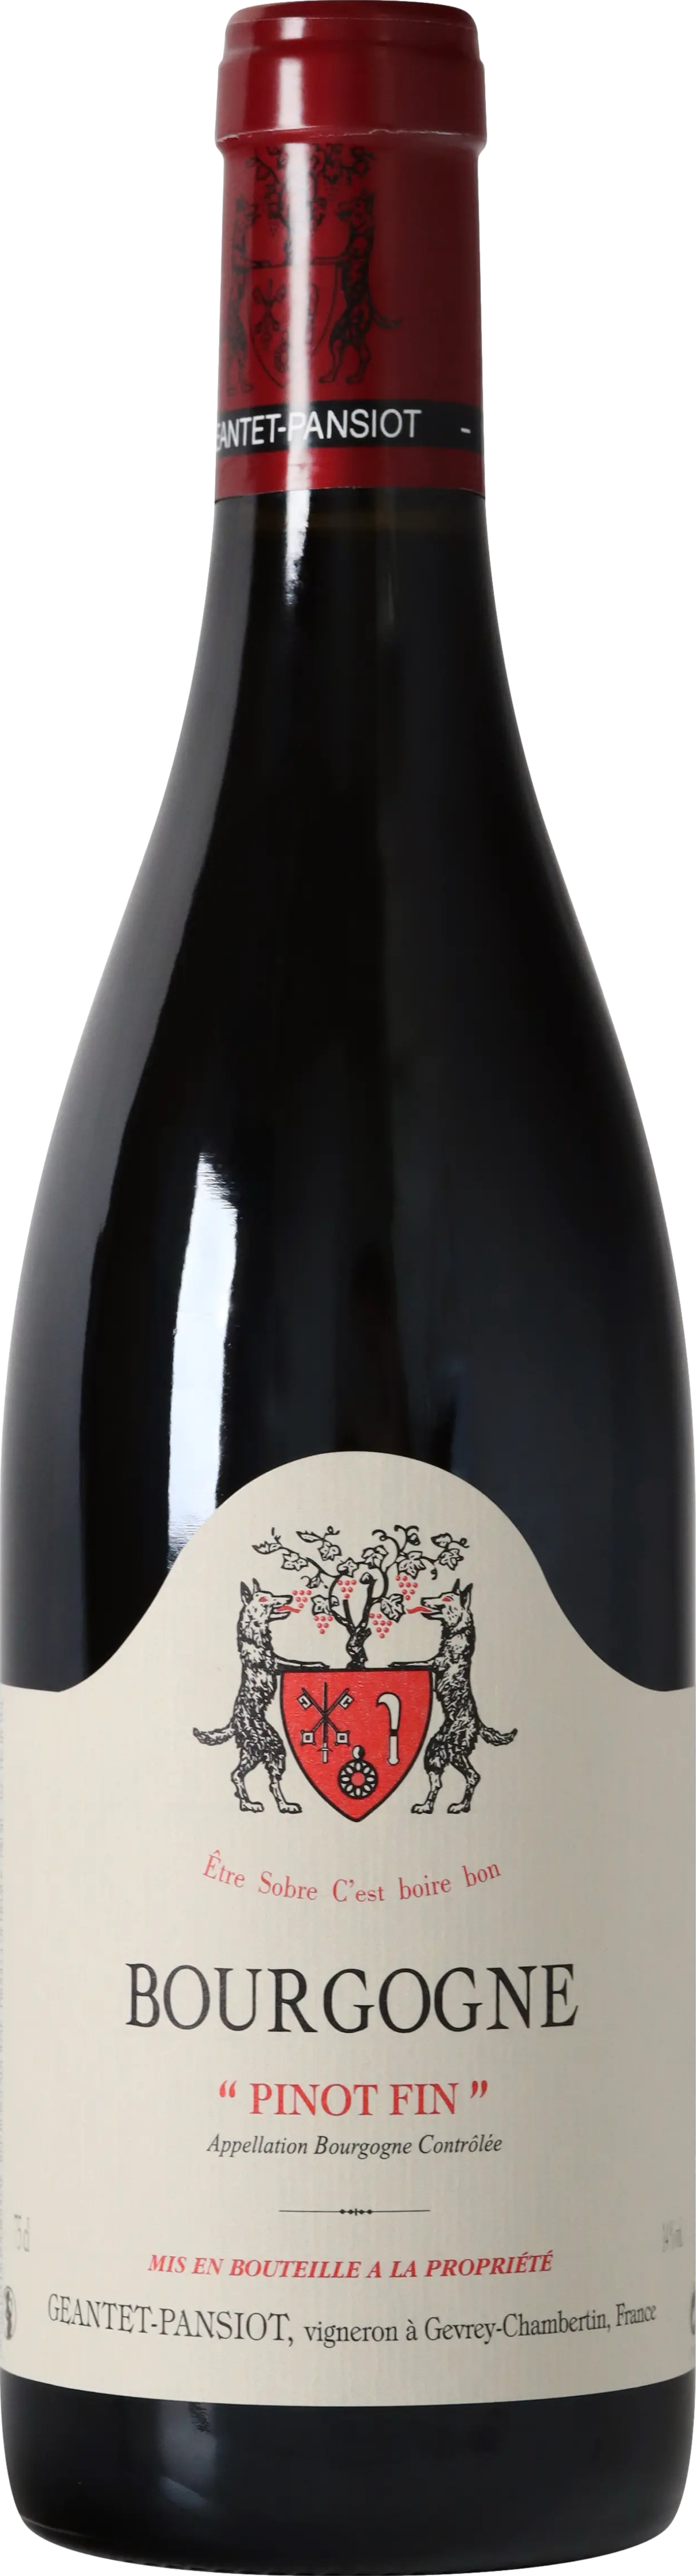 08/2021 günstig Kaufen-Geantet-Pansiot Bourgogne Pinot Fin 2021. Geantet-Pansiot Bourgogne Pinot Fin 2021 . 